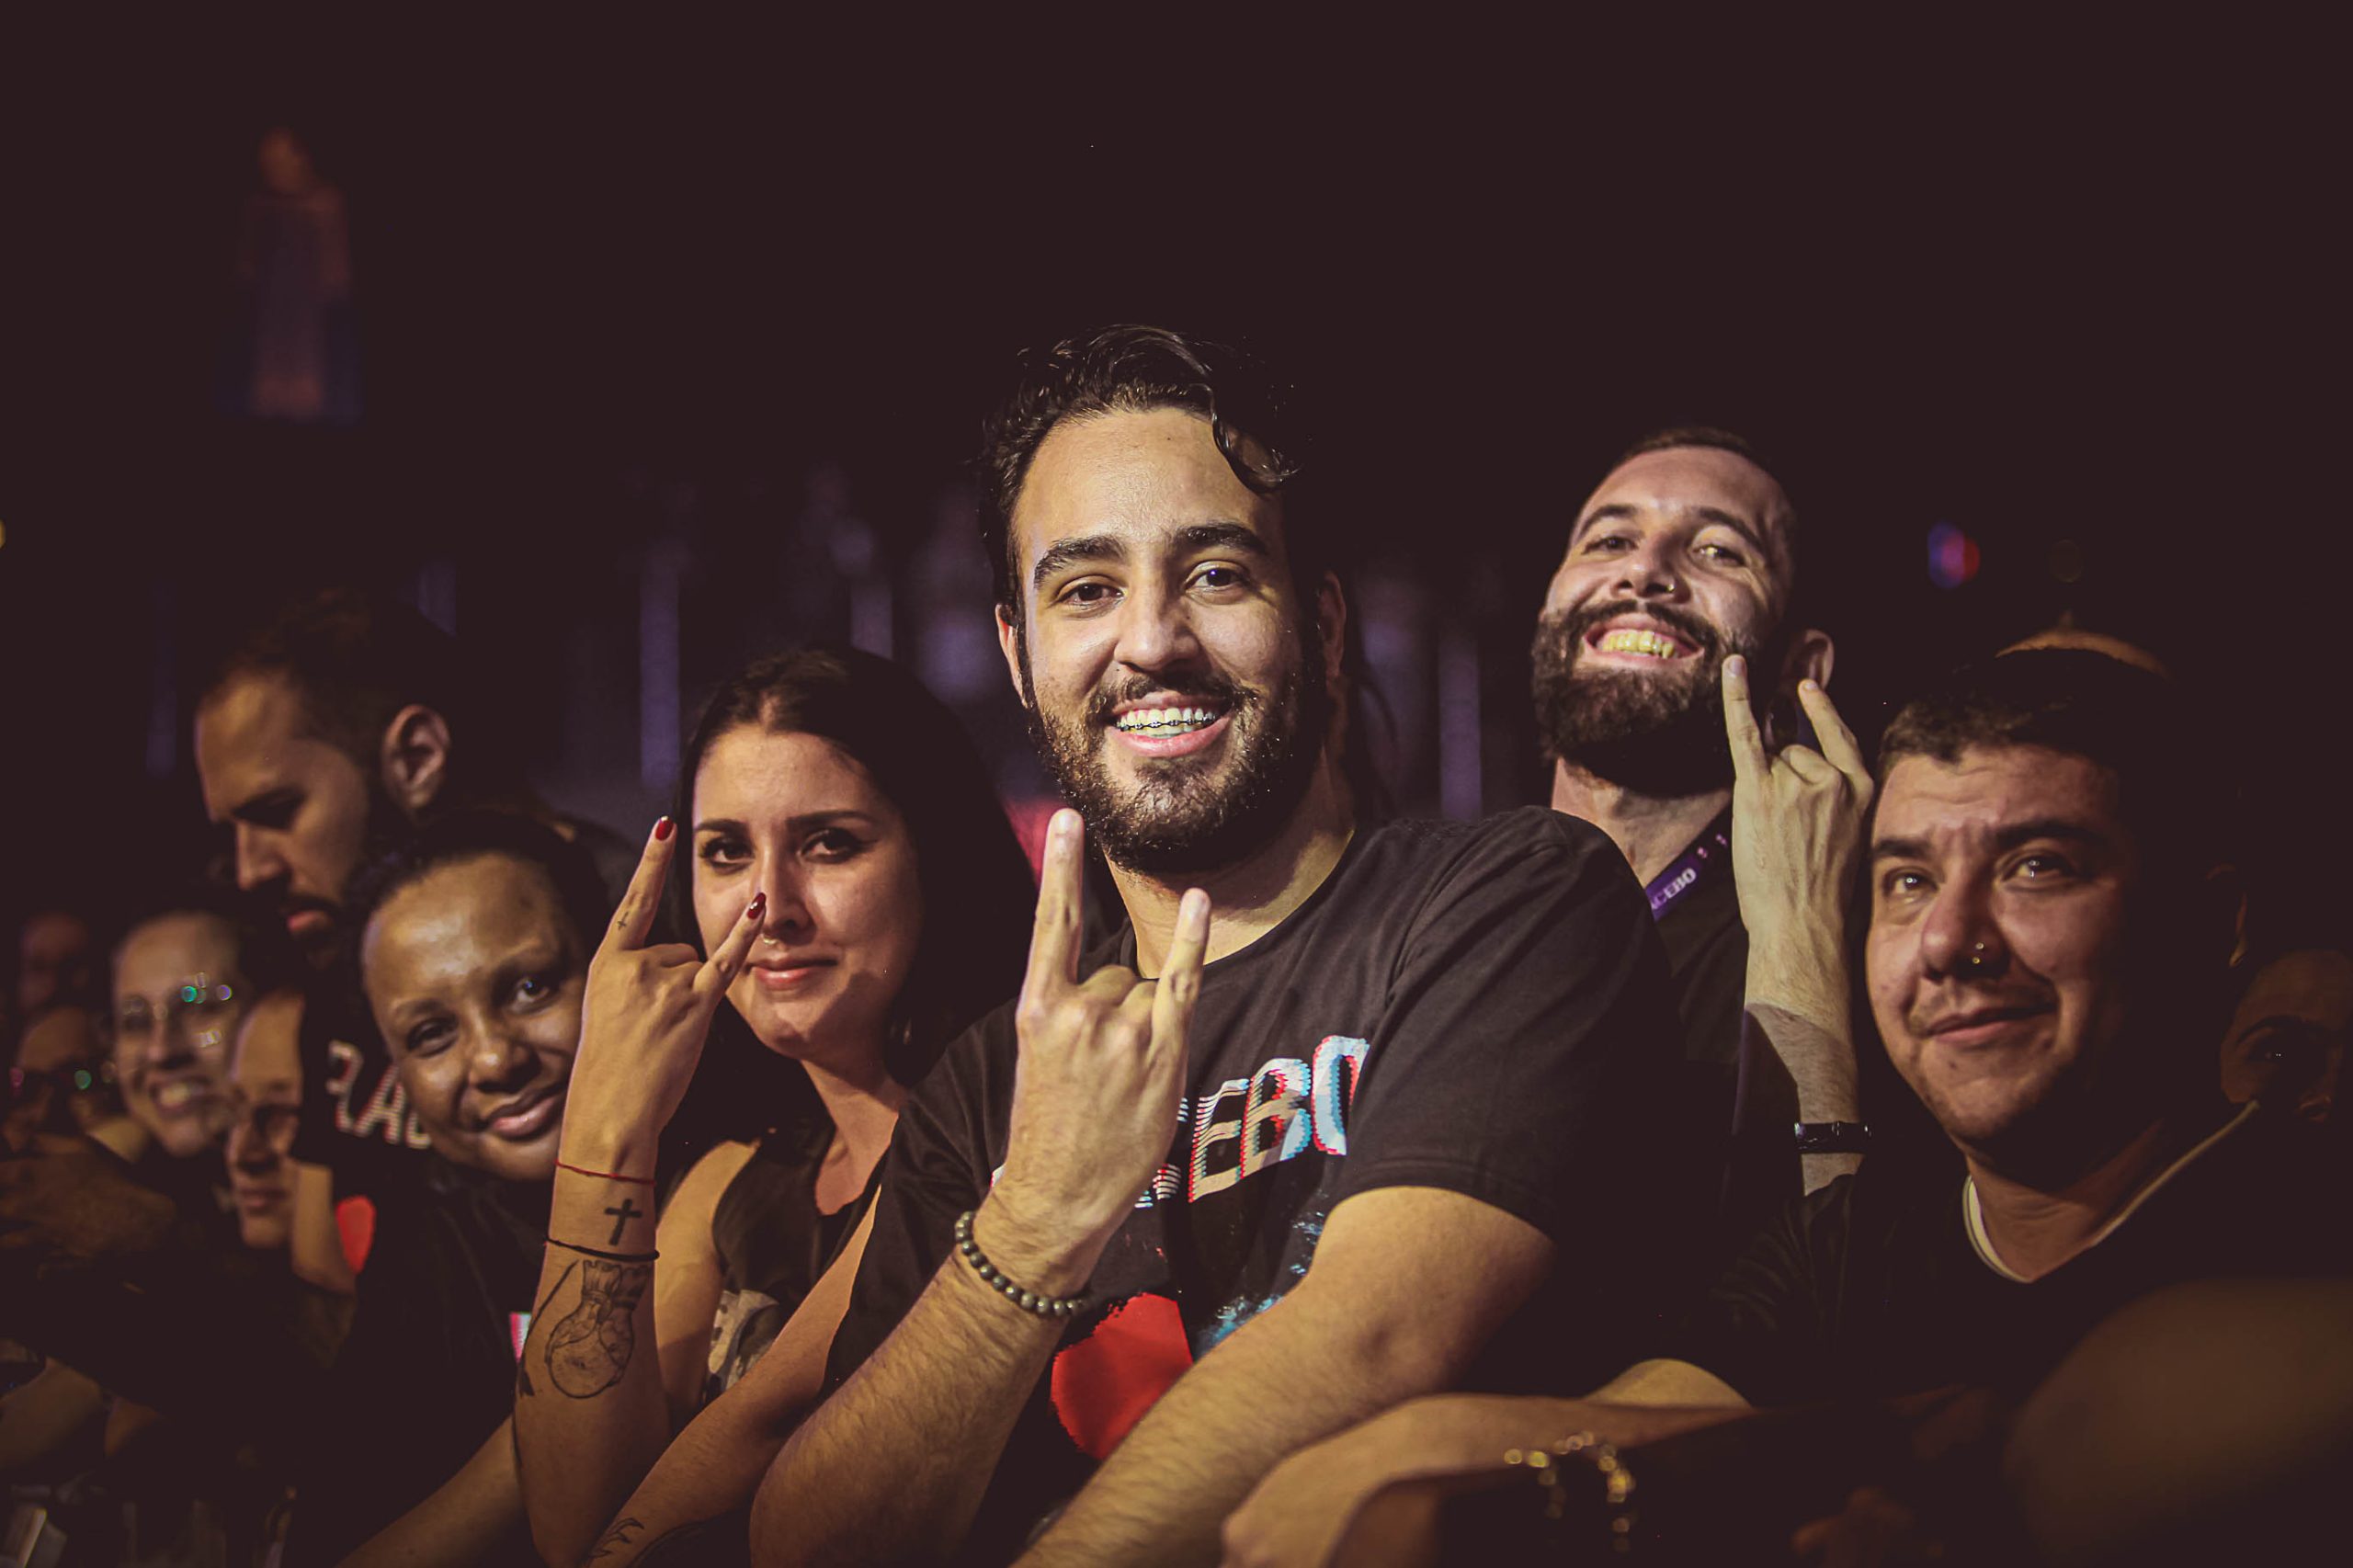 Público no show do Placebo em São Paulo. Crédito: Jéssica Marinho